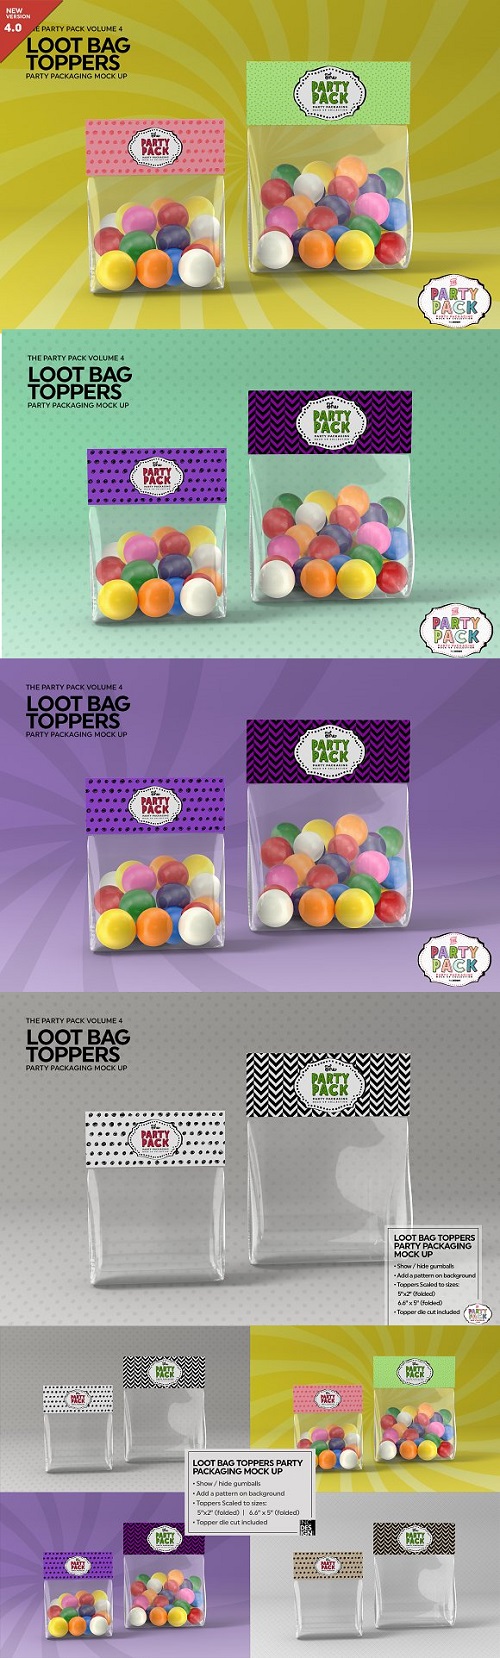 Loot Bag Packaging Mock Up - 2198508